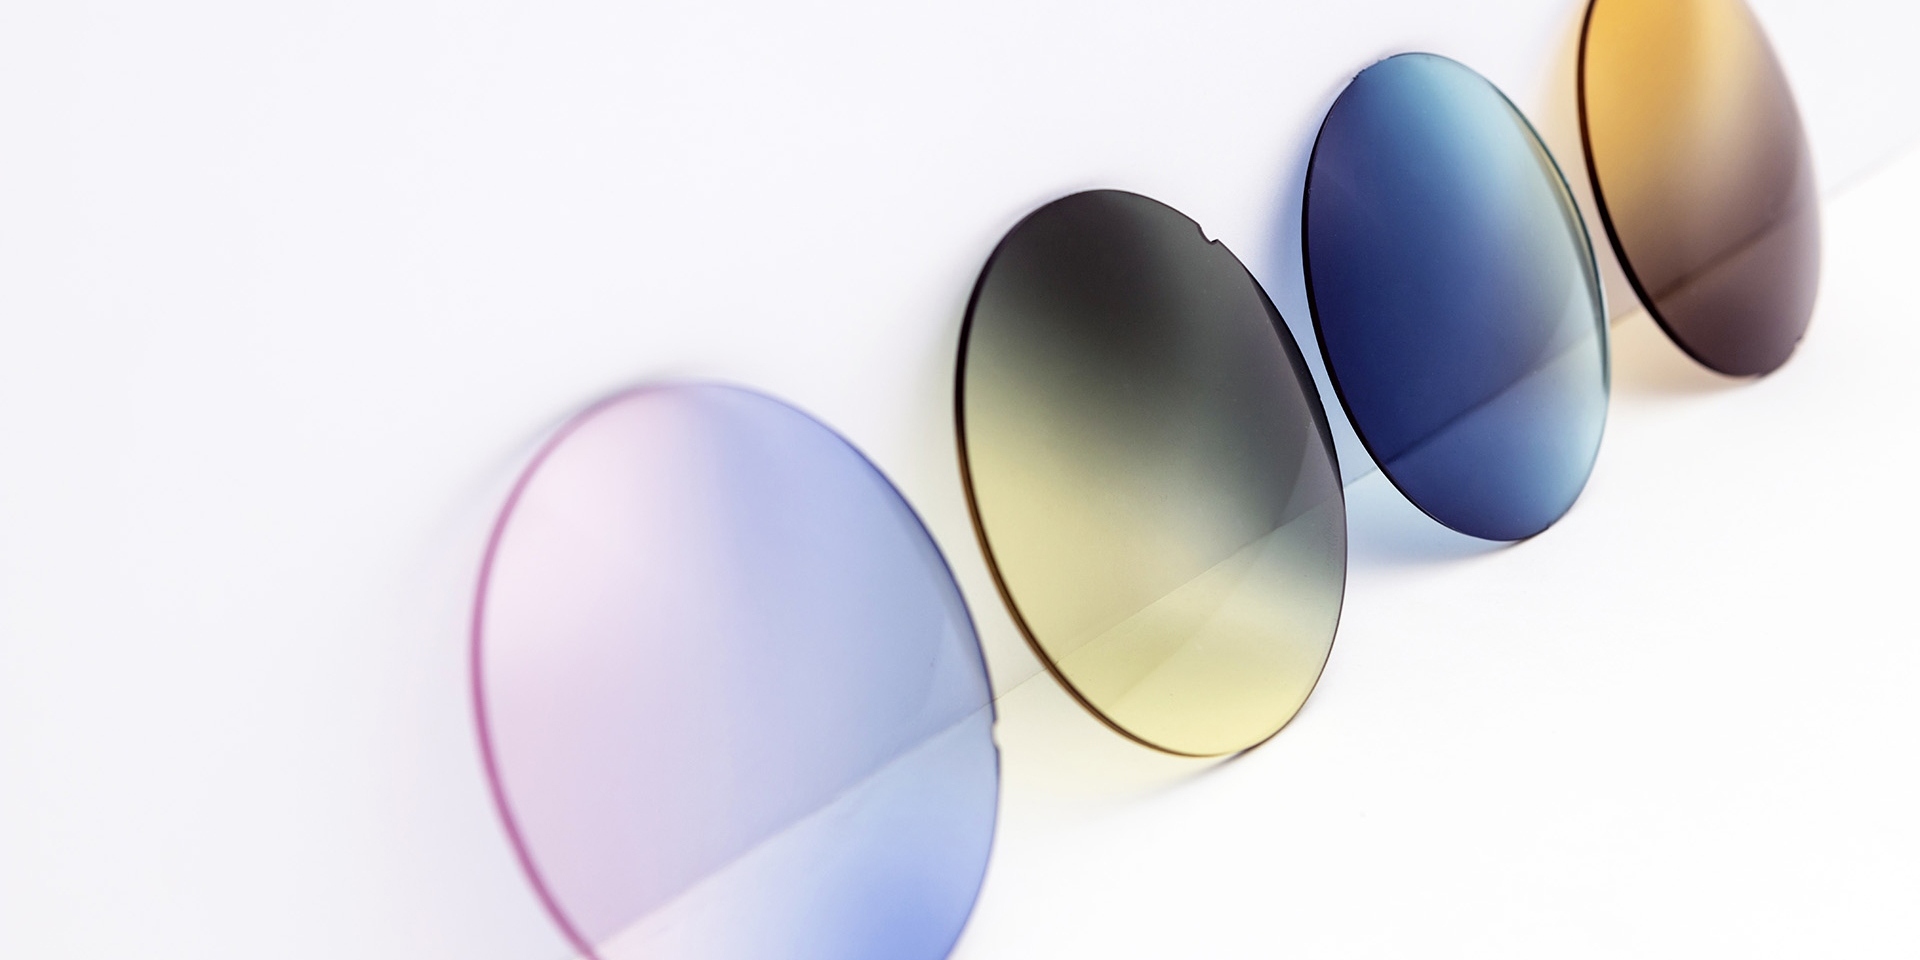 Solglas i olika färger mot en vit yta: rosalila, gulgrå, blå och bruna gradalfärger.